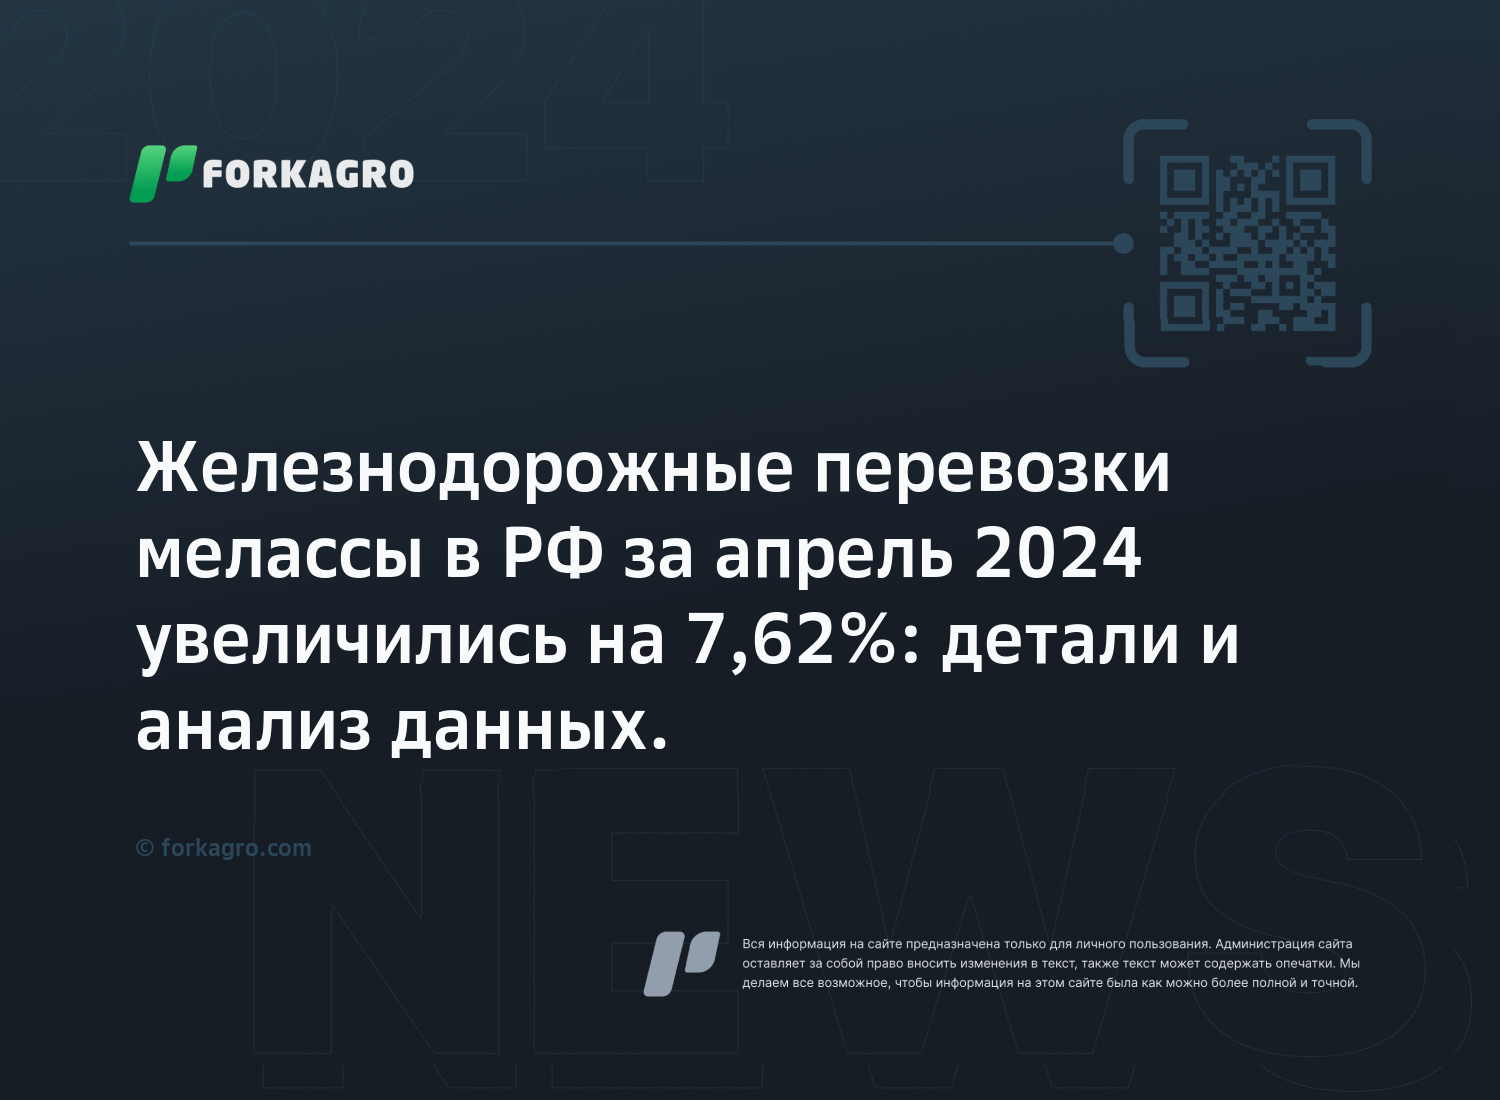 Железнодорожные перевозки мелассы в РФ за апрель 2024 увеличились на 7,62%: детали и анализ данных.